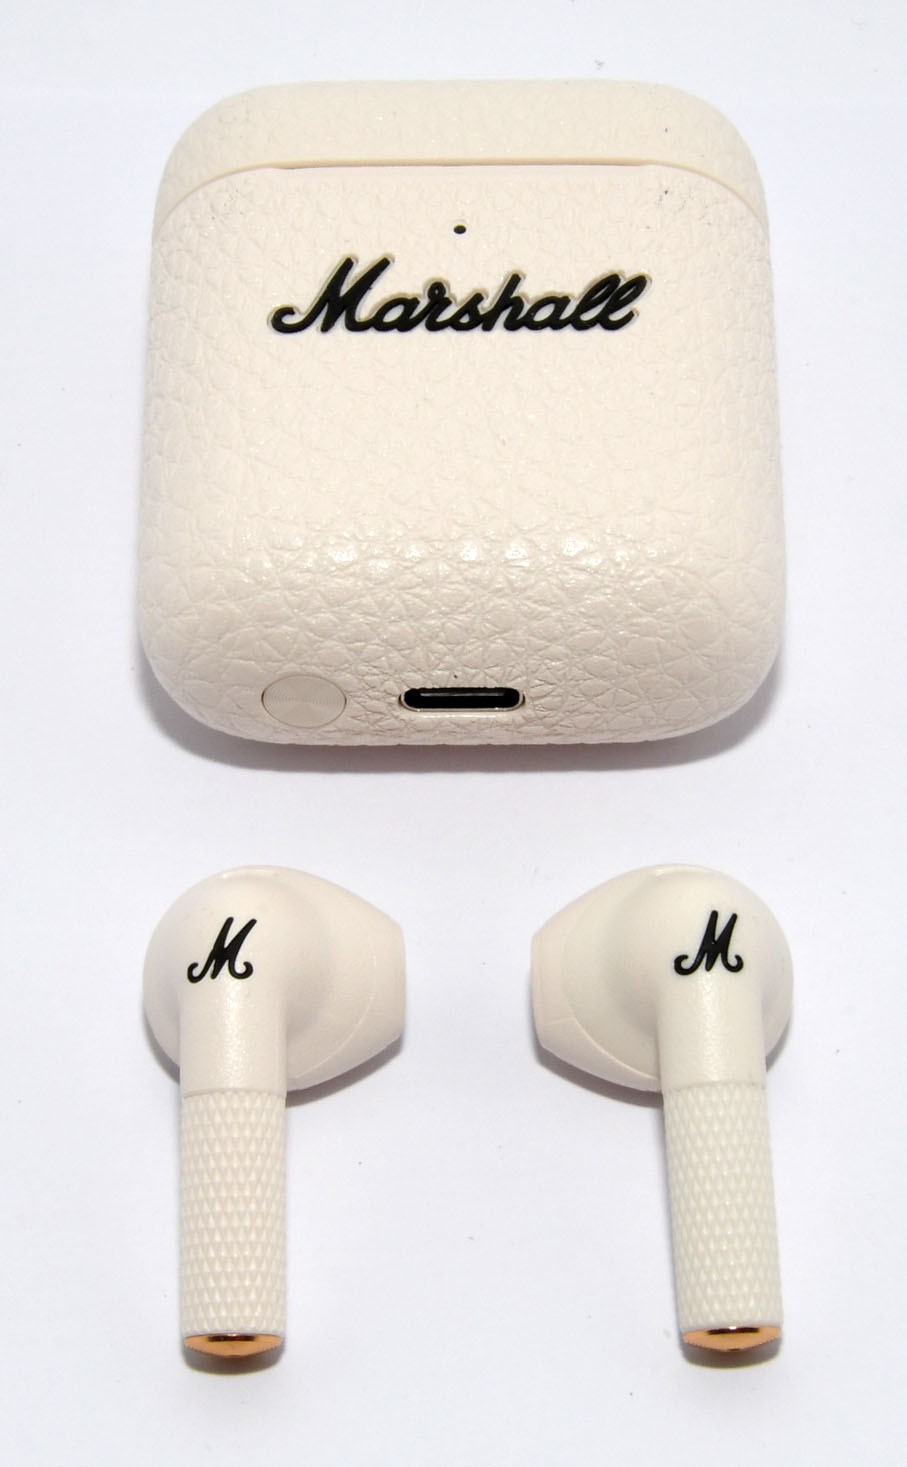 Auriculares Bluetooth Marshall Minor III True Wireless Negro